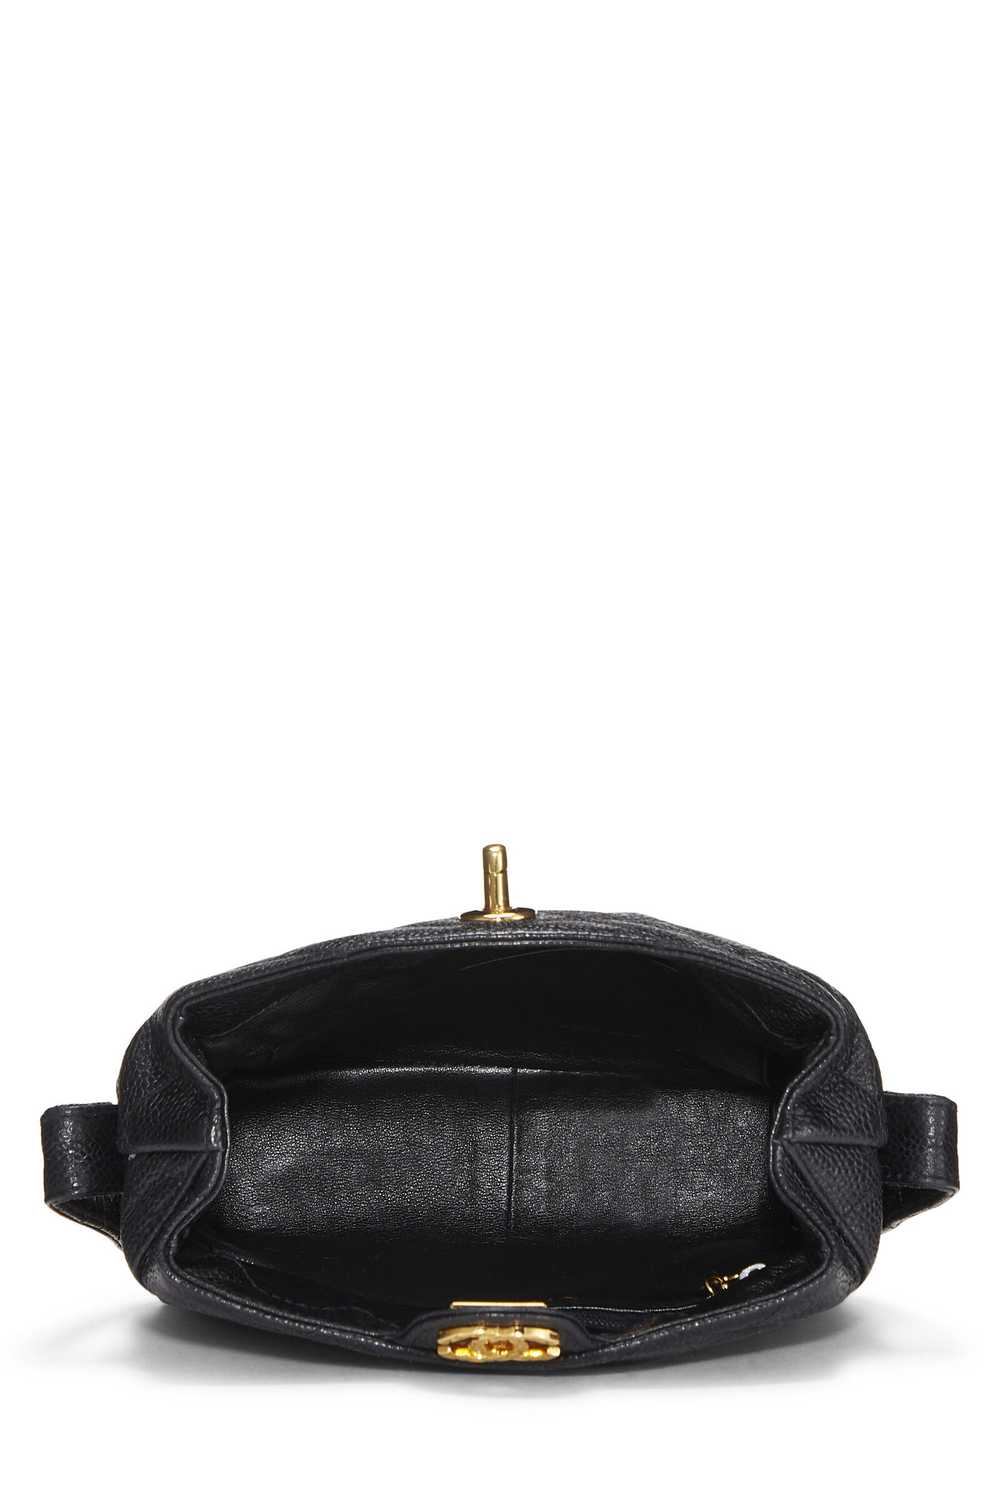 Black Caviar Shoulder Bag - image 7